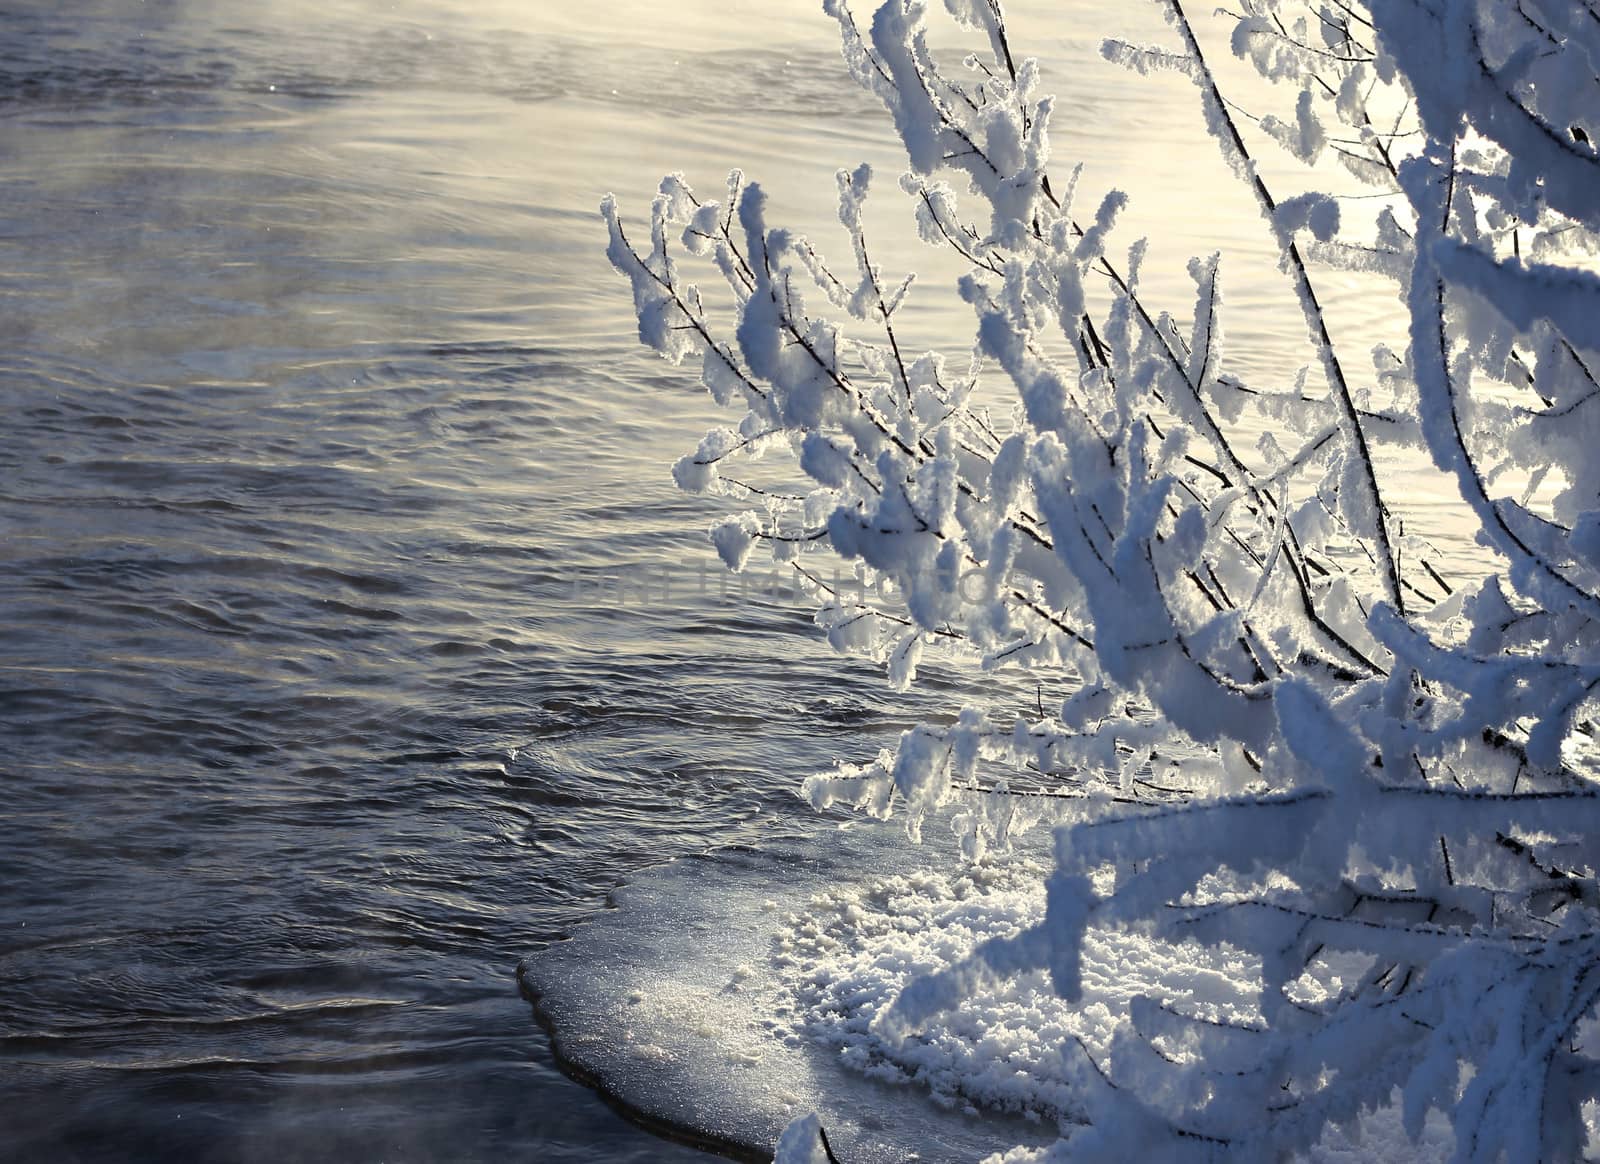 Frozen branches near open water by anterovium